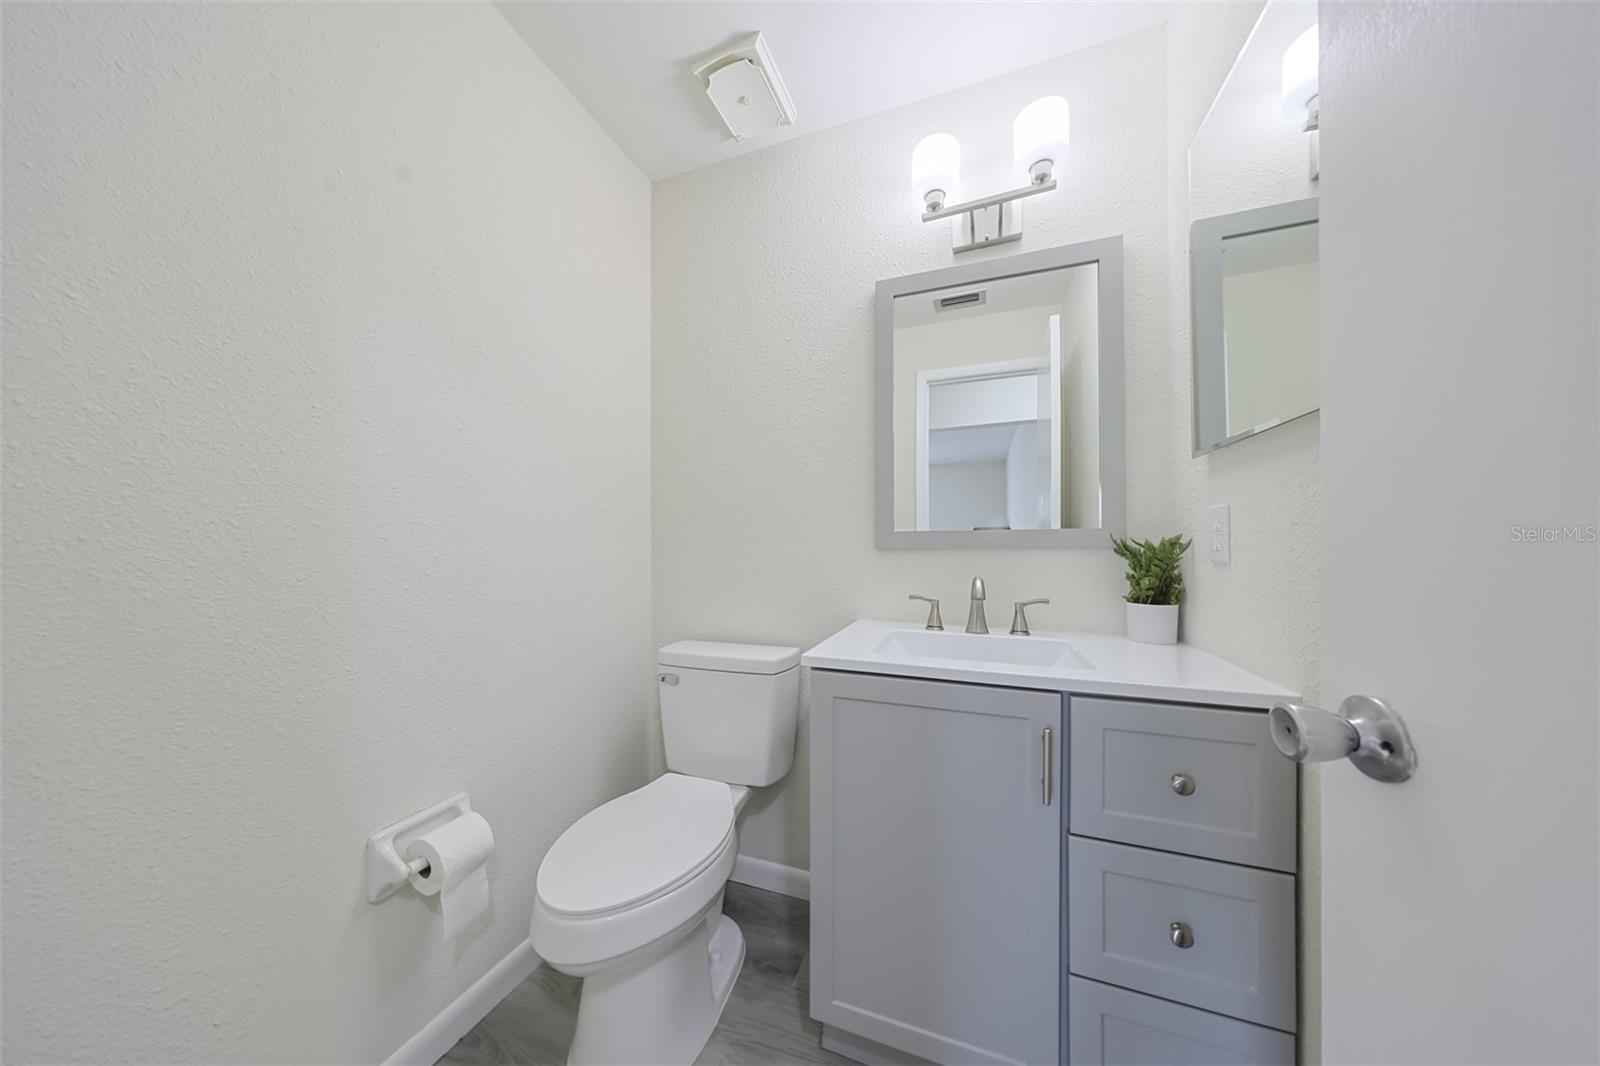 Guest Bathroom-New vanity, sink, fixtures, lighting & toilet